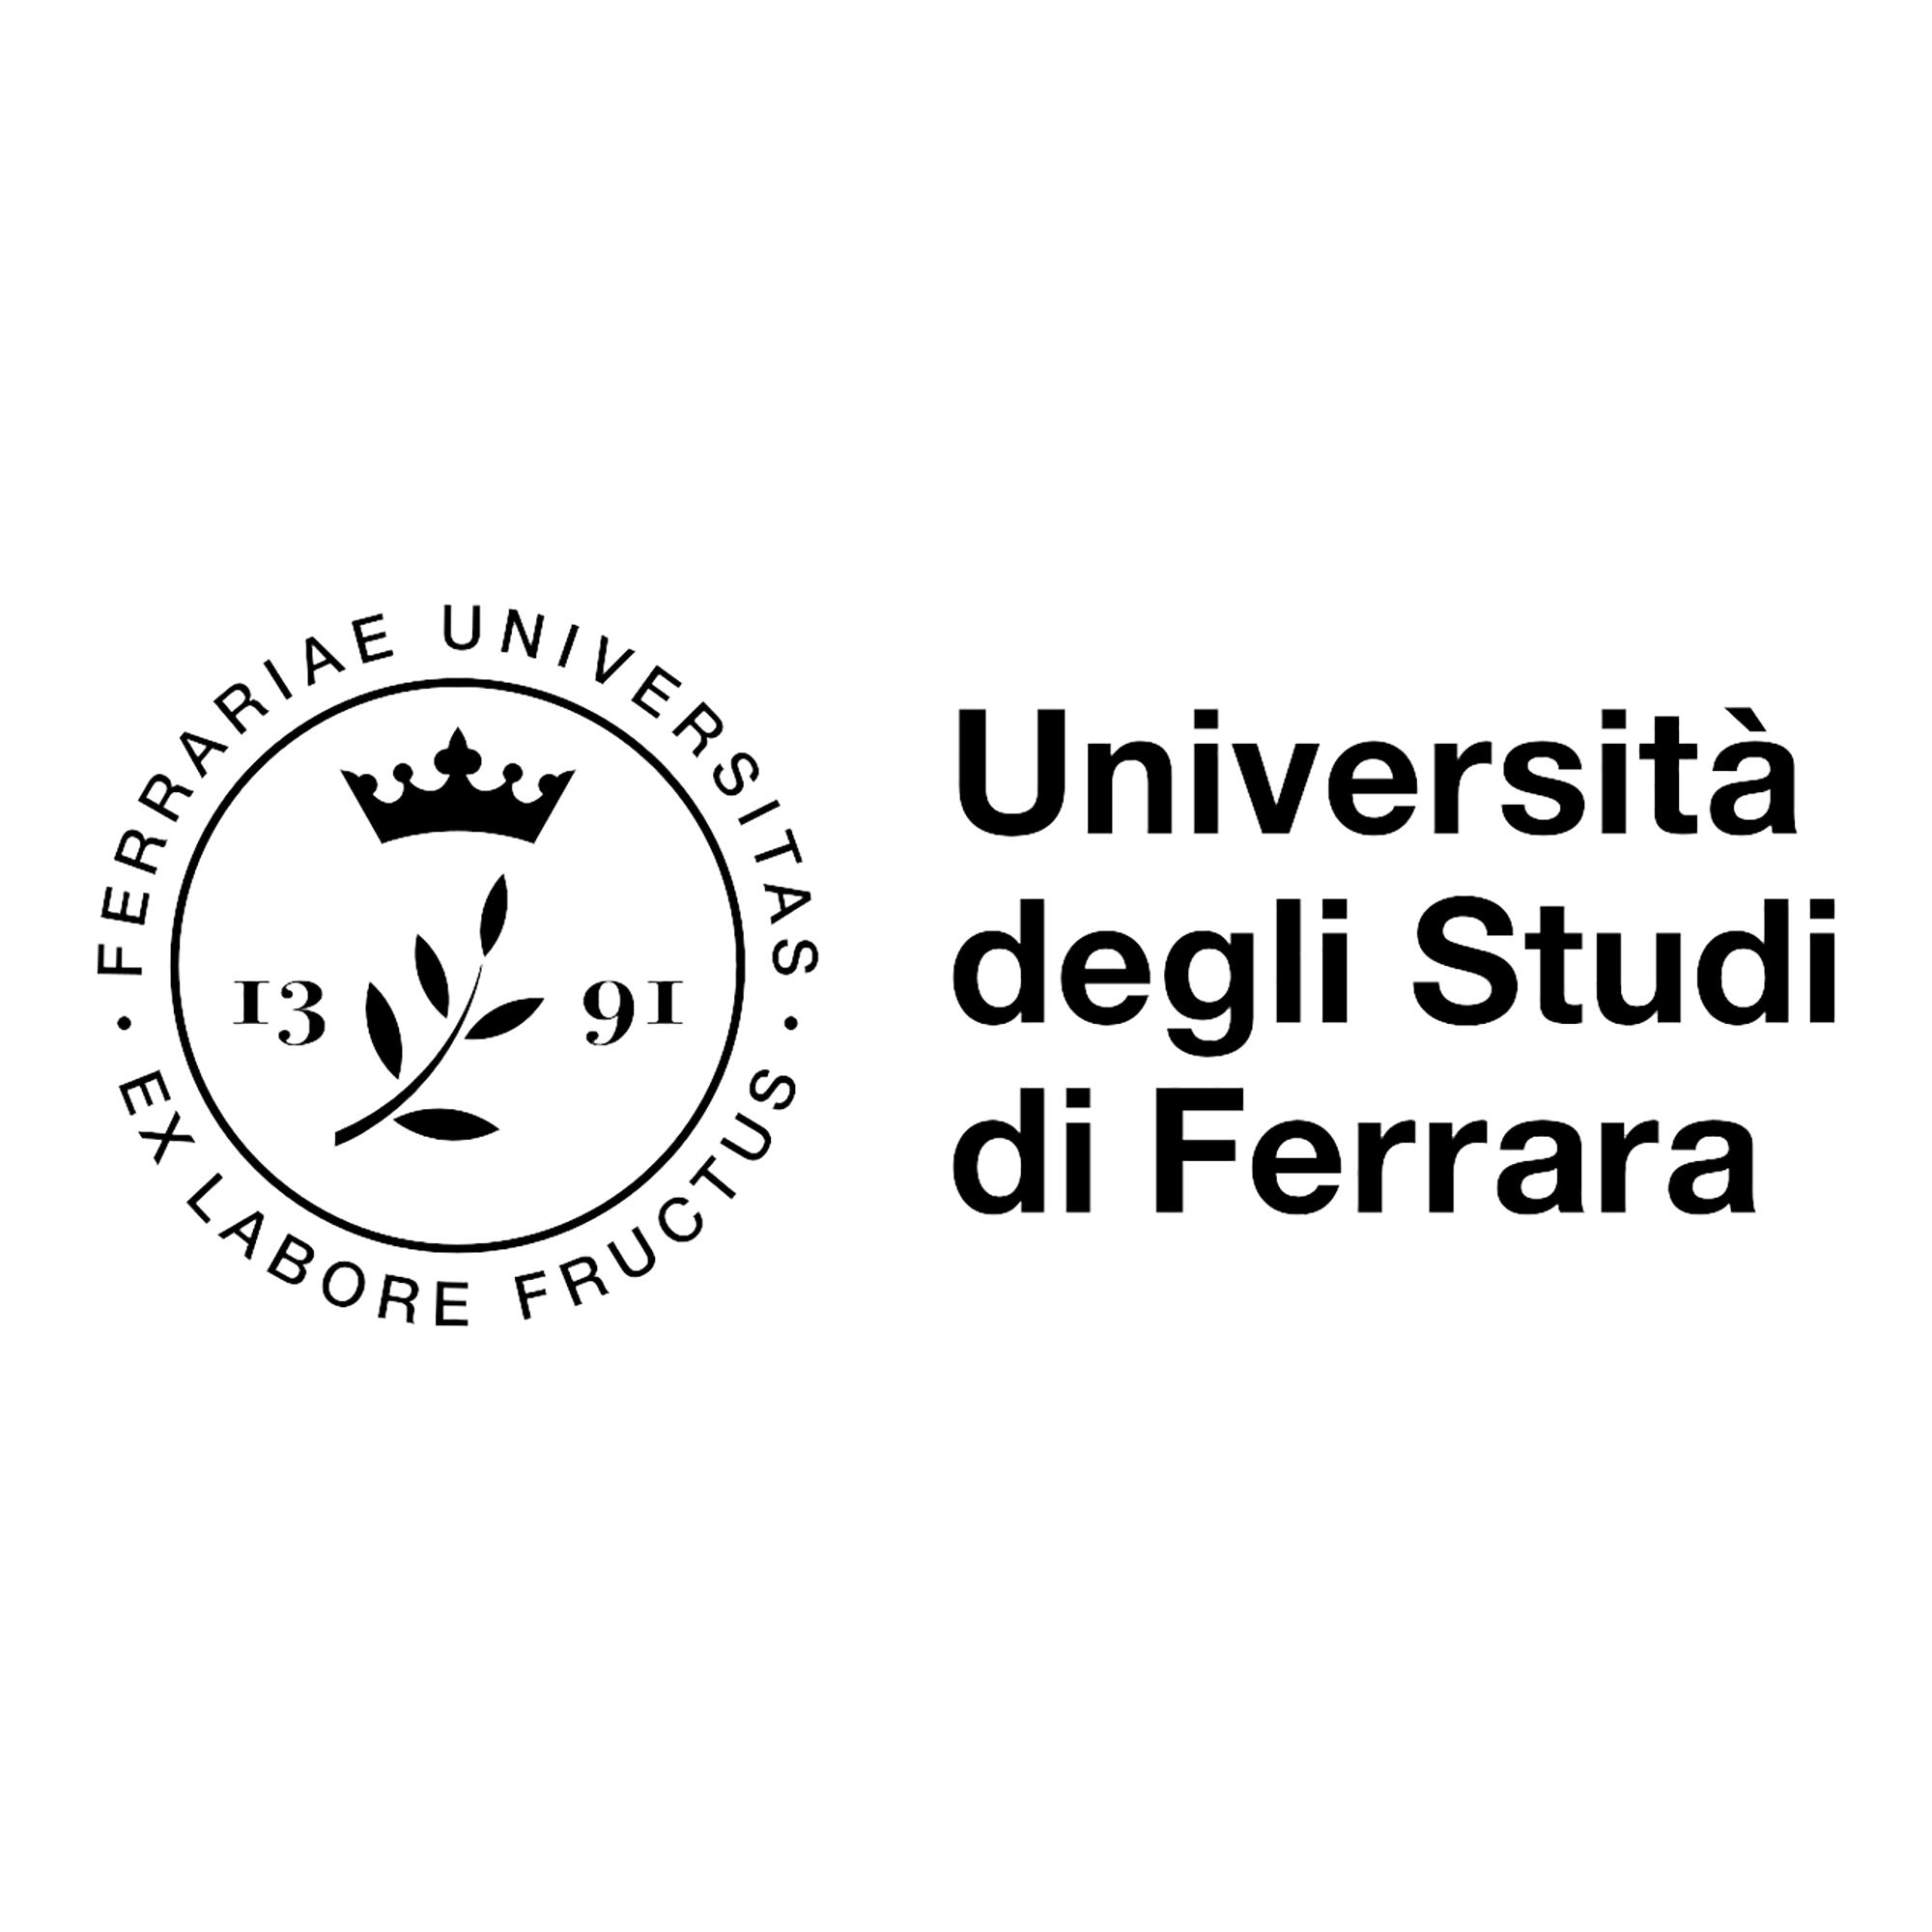 Logo Università degli Studi di Ferrara